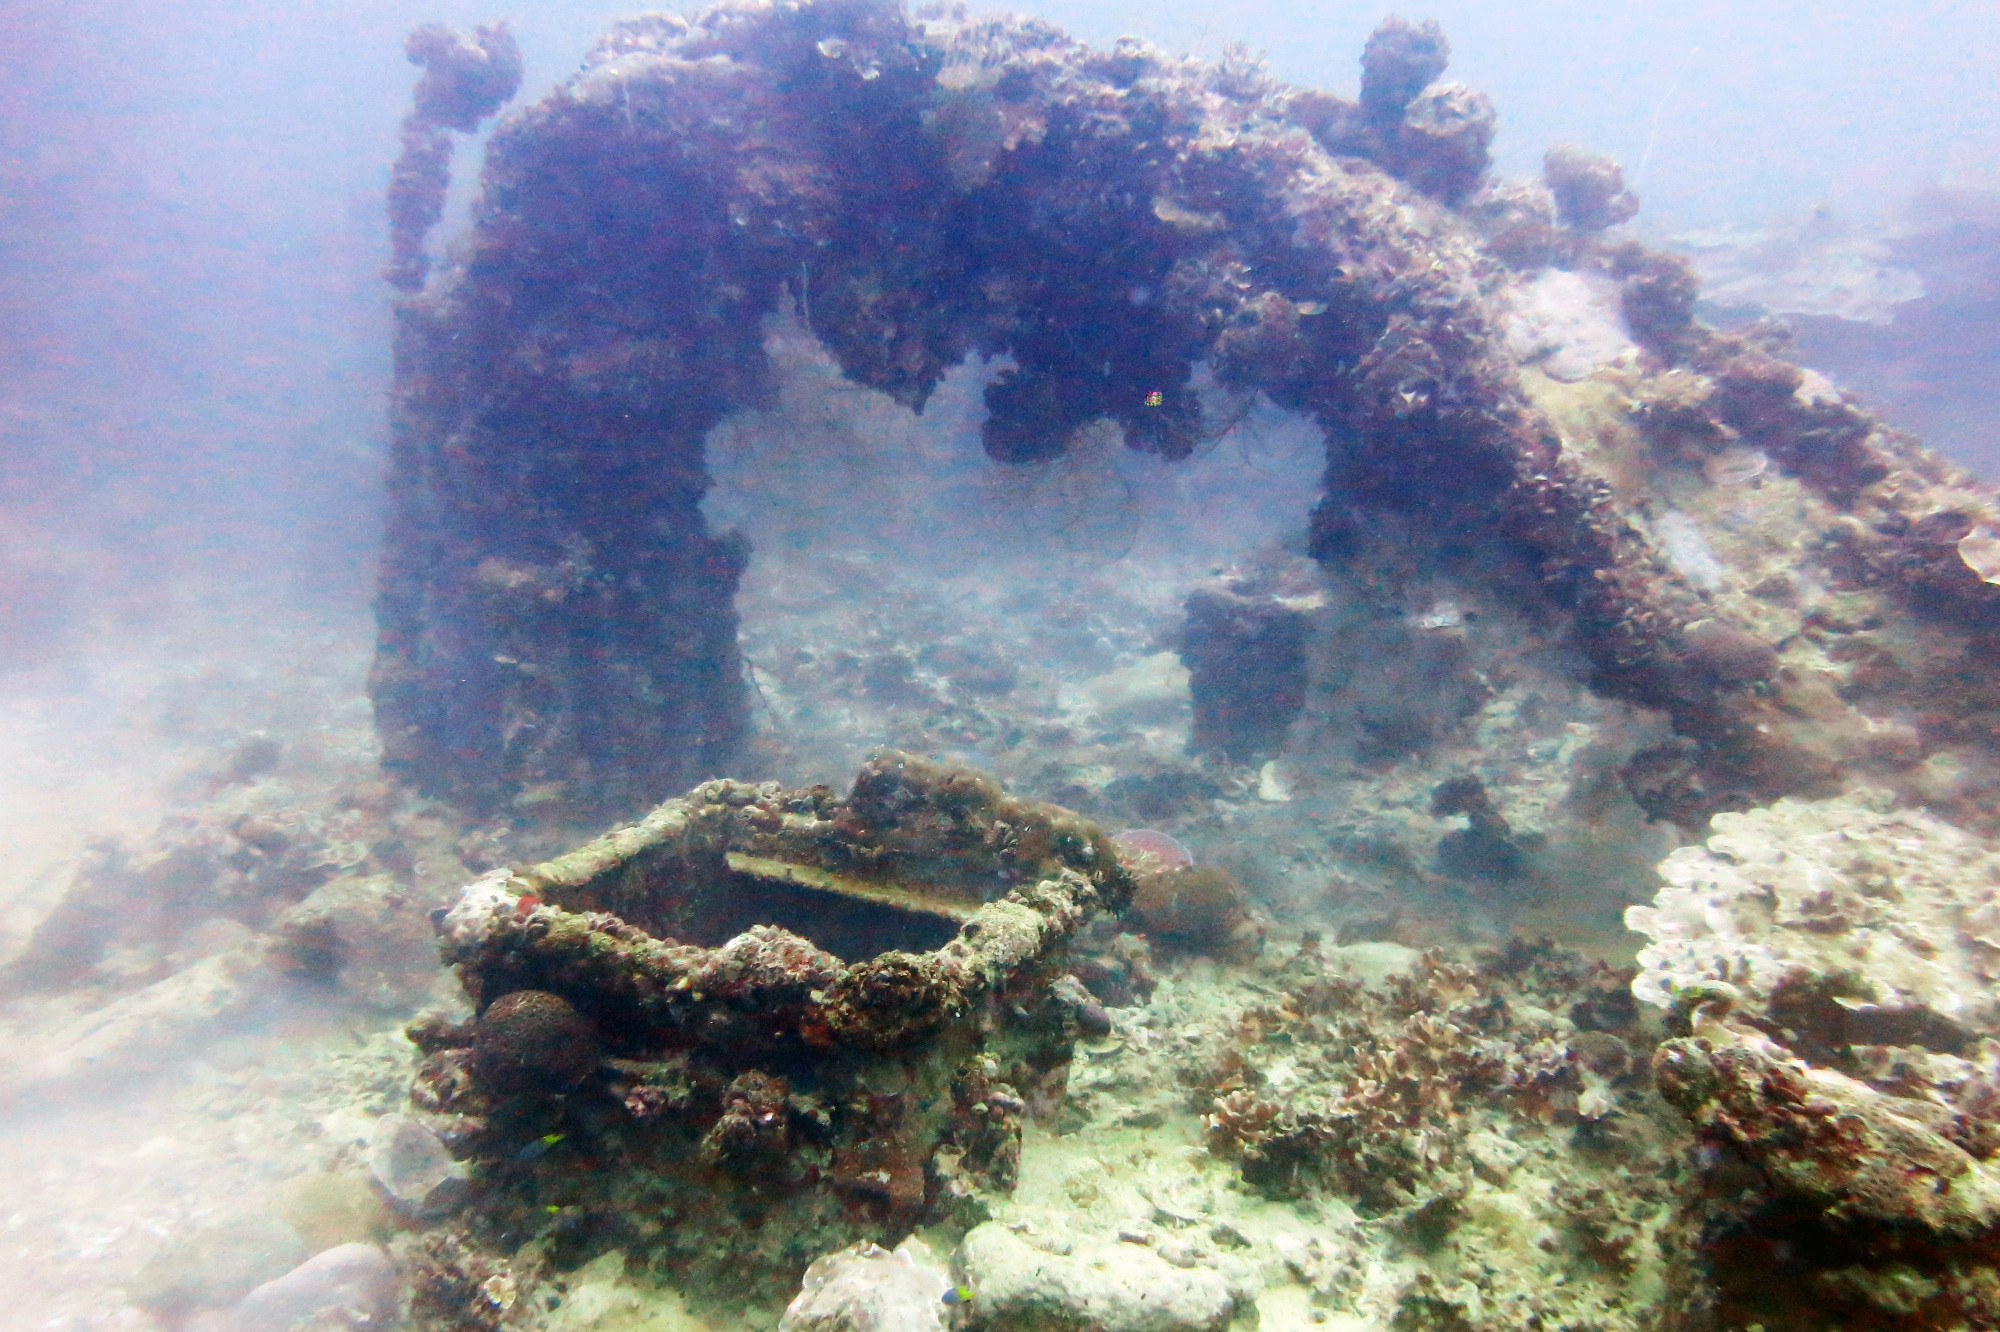 Iro Wreck, Palau